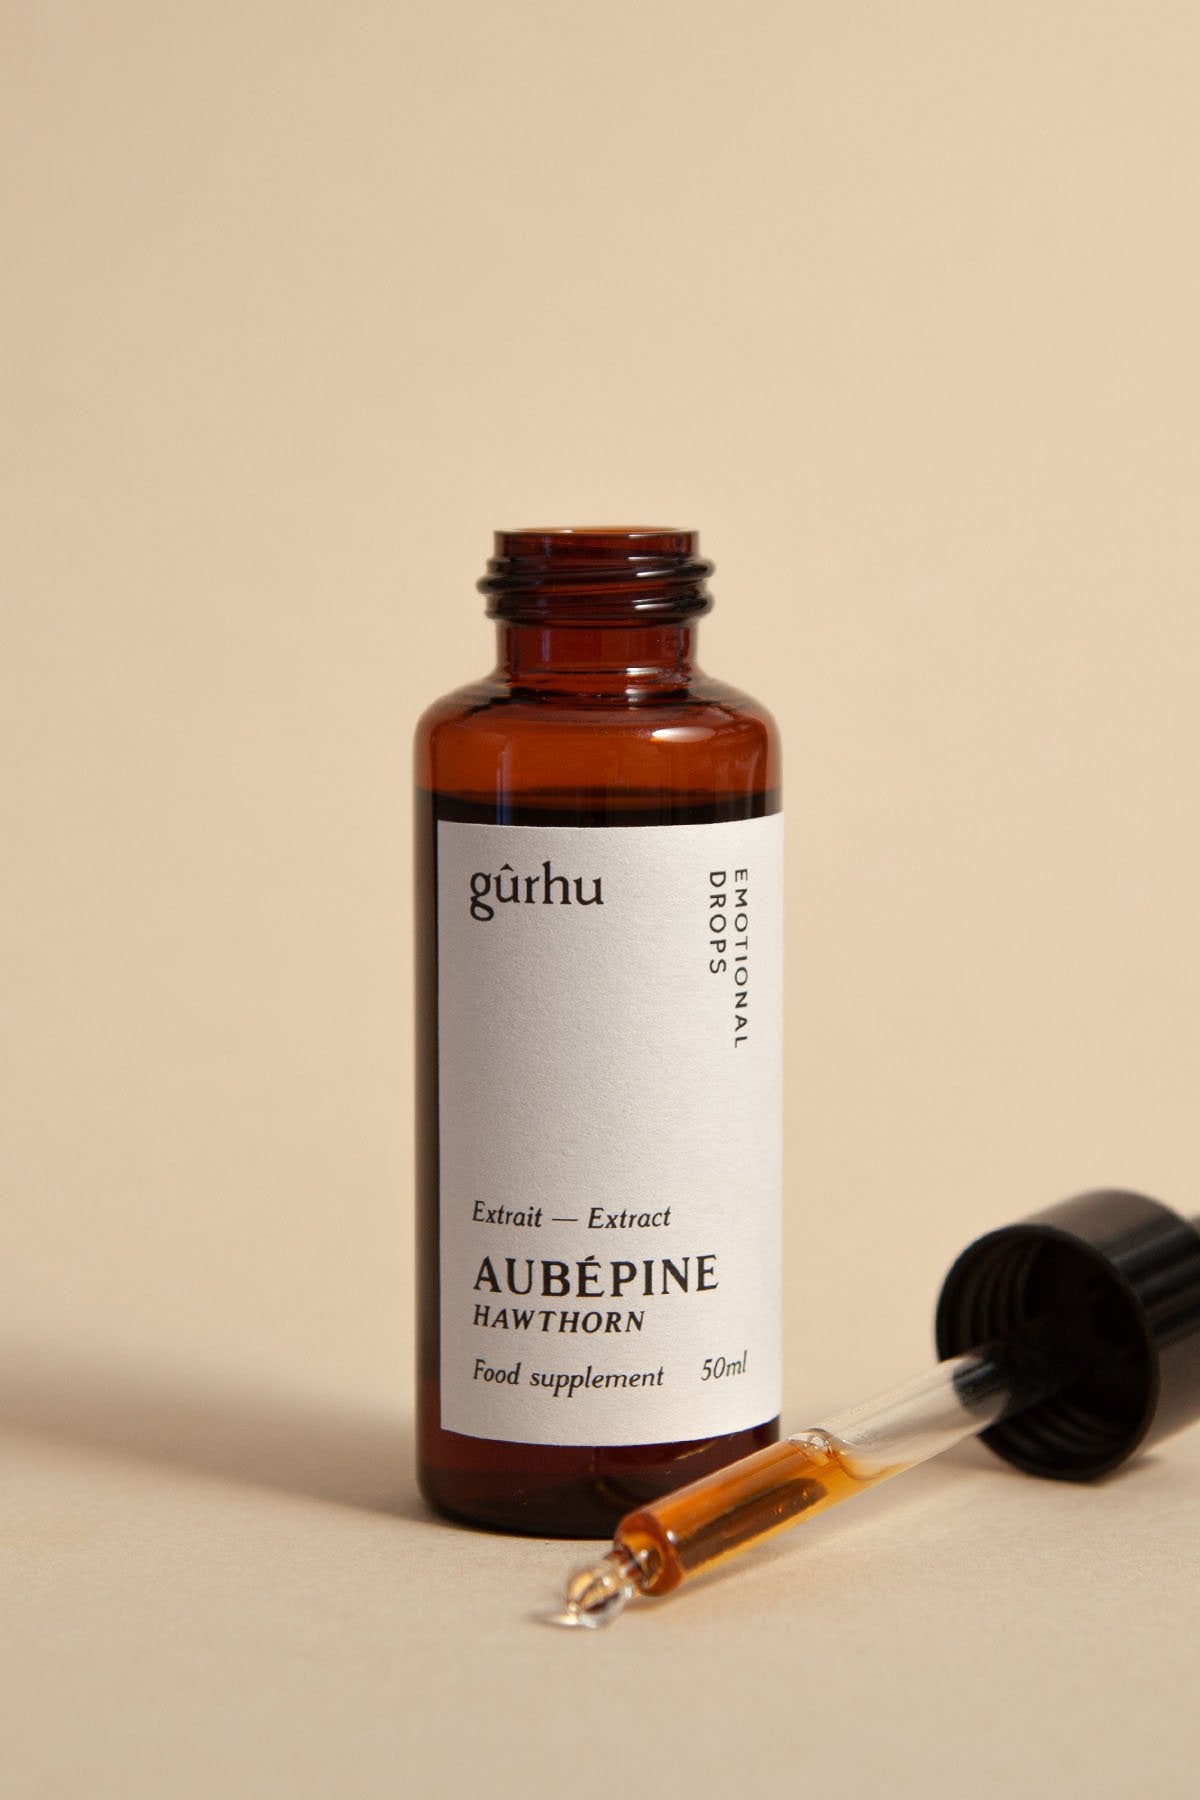 L'extrait d'aubépine de Gûrhu est un complément naturel surtout utile pour traiter l'anxiété, le stress, l'insomnie et les troubles du sommeil, faciliter l'endormissement chez les personnes nerveuses et angoissées.